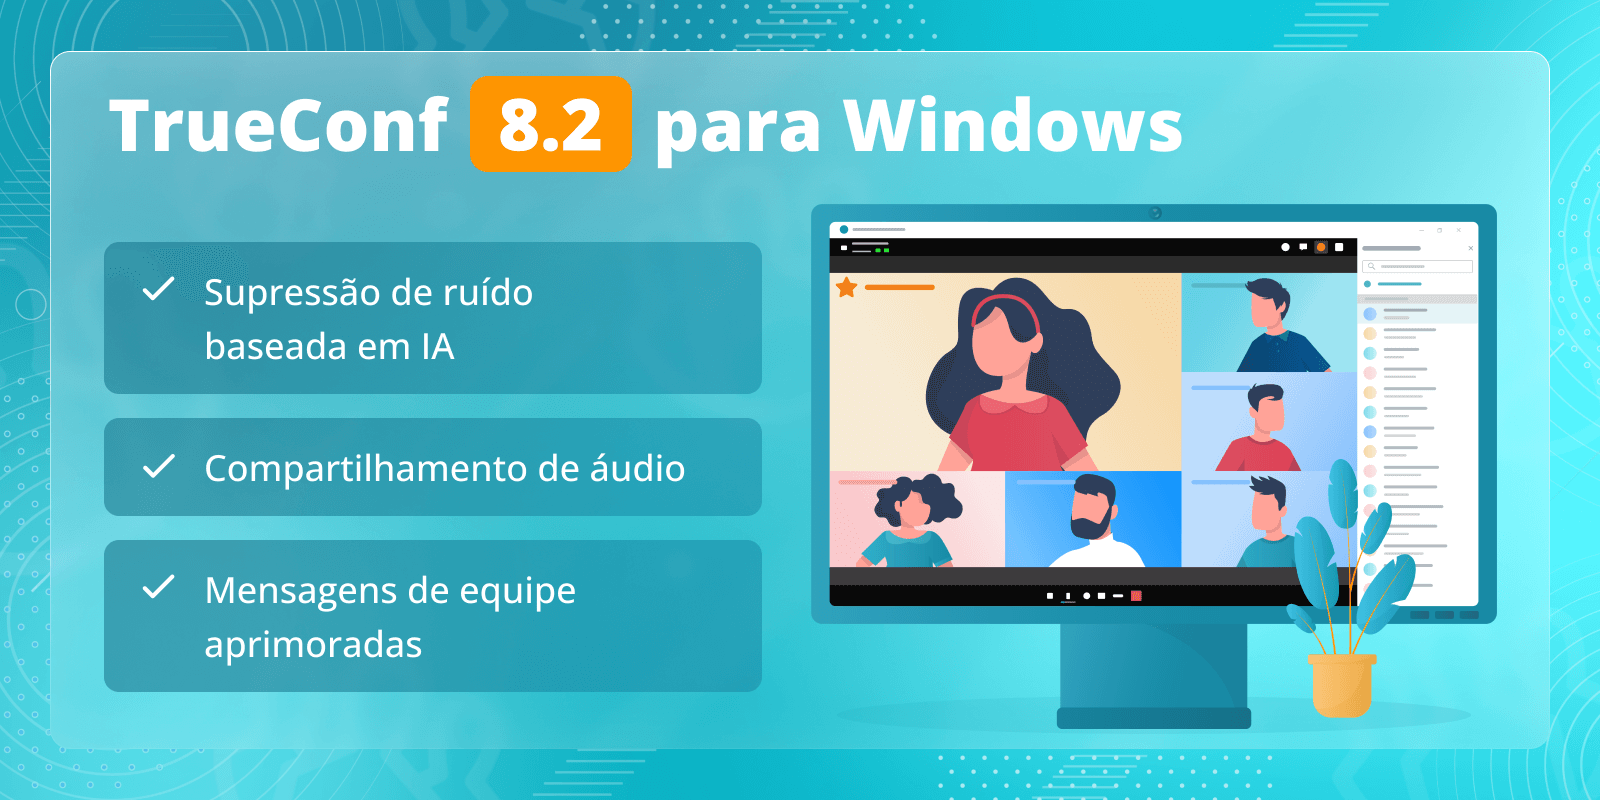 TrueConf 8.2 para Windows: supressão de ruído baseada em IA, mensagens de equipe aprimoradas e compartilhamento de áudio 4